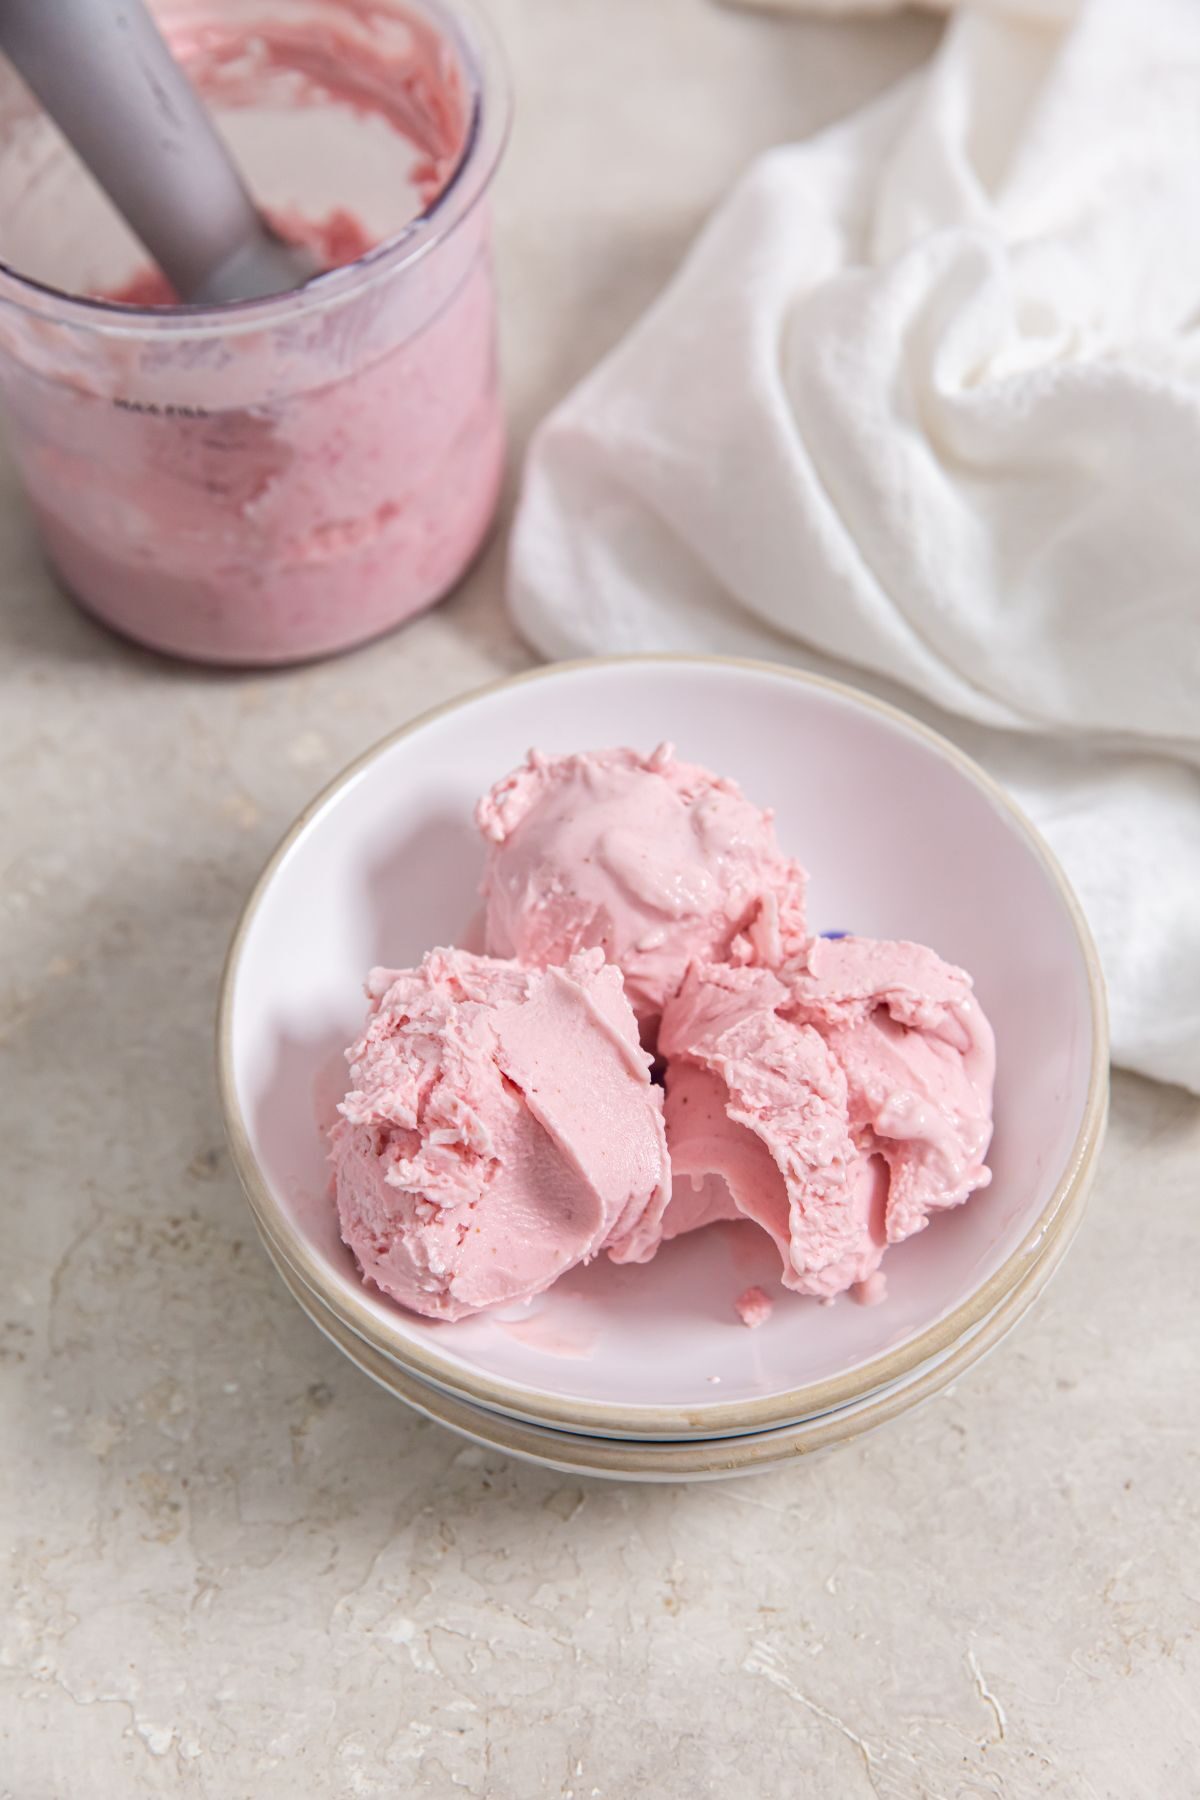 Ninja Creami Strawberry ice cream in a small white bowl